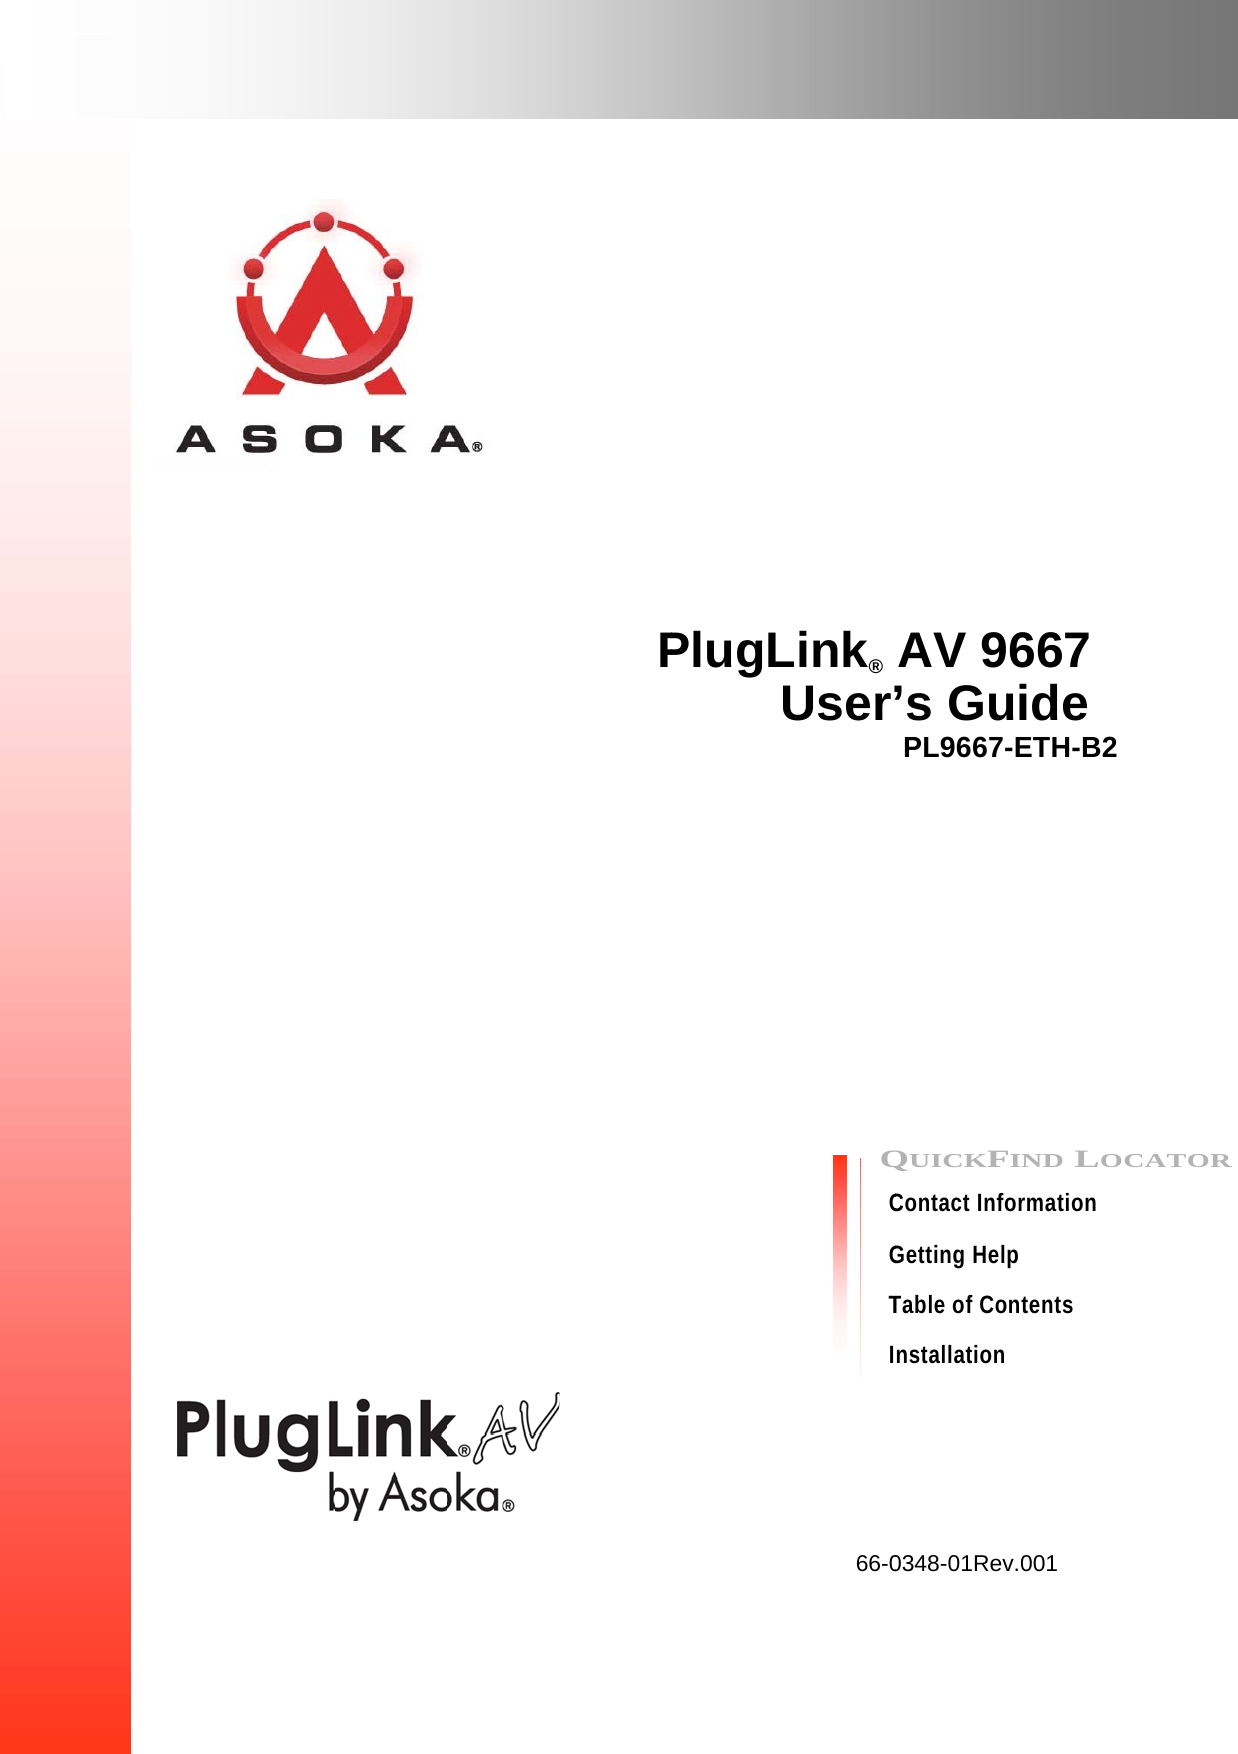                                          PPlugLLink®  User’QCGTI66-0AV 9’s GuPL9667-QUICKFContact InfoGetting HelTable of Constallation 0348-01Rev667 uide -ETH-B2FIND LOormation p ntents  v.001 OCATORR